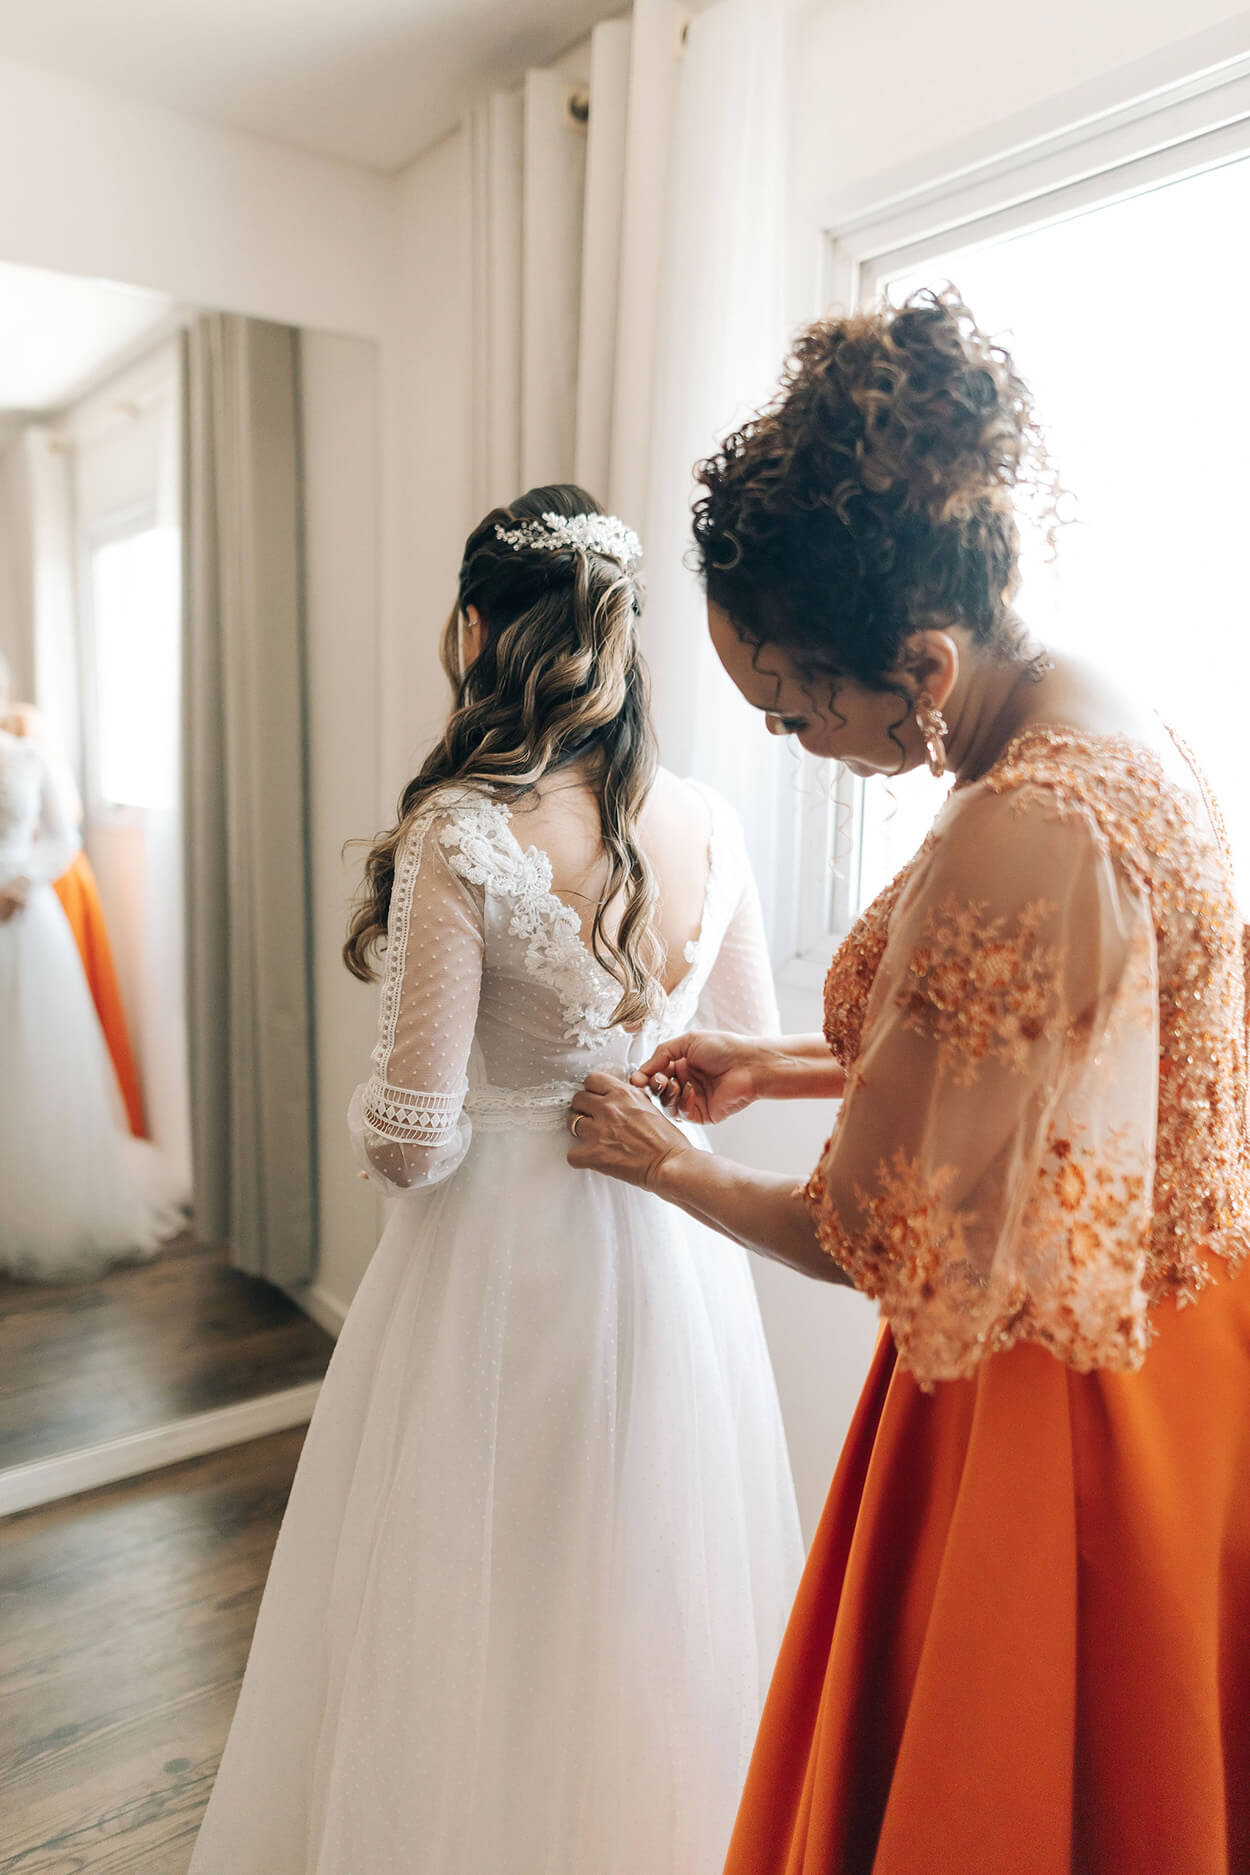 Mulher com vestido laranja fechando o vestido da noiva no quarto